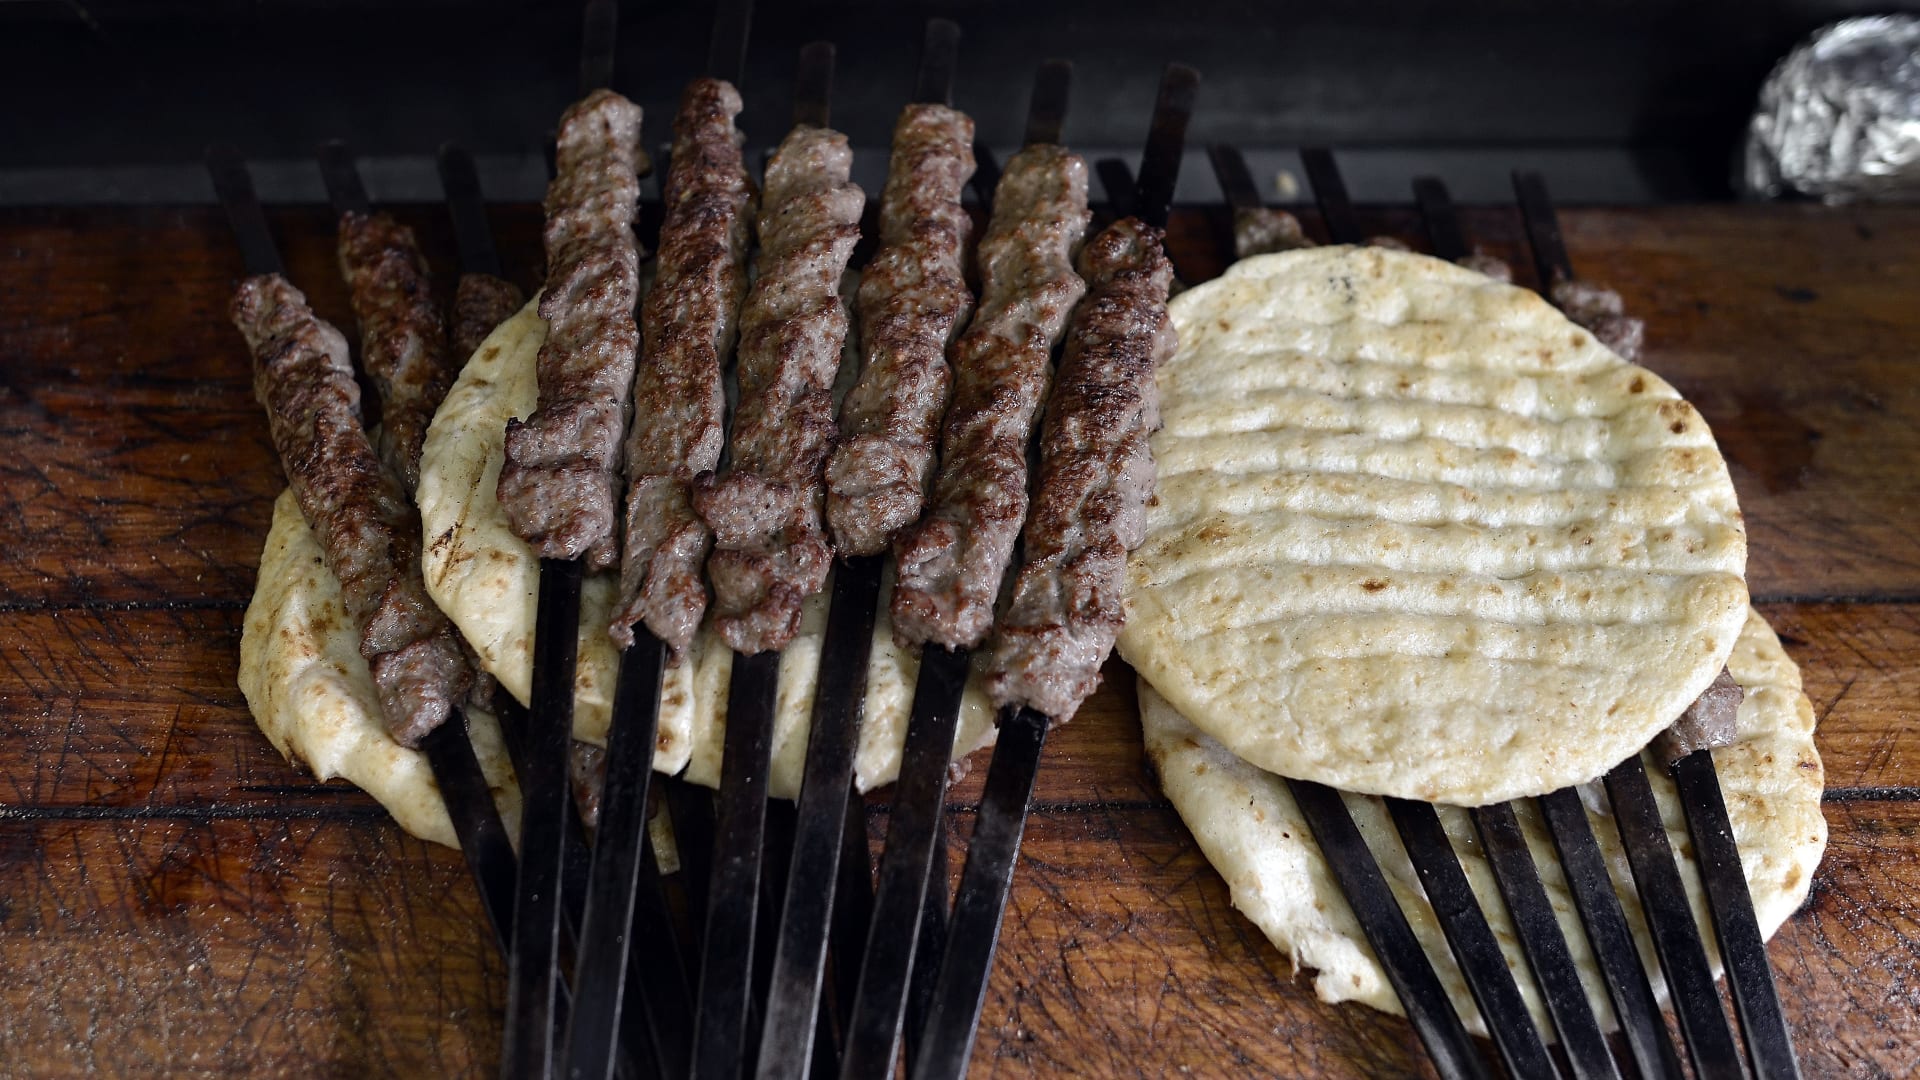 تخطط لاستقبال الضيوف خلال رمضان؟ هذه أفضل طريقة لمعرفة نضج اللحوم والدواجن أثناء الطبخ